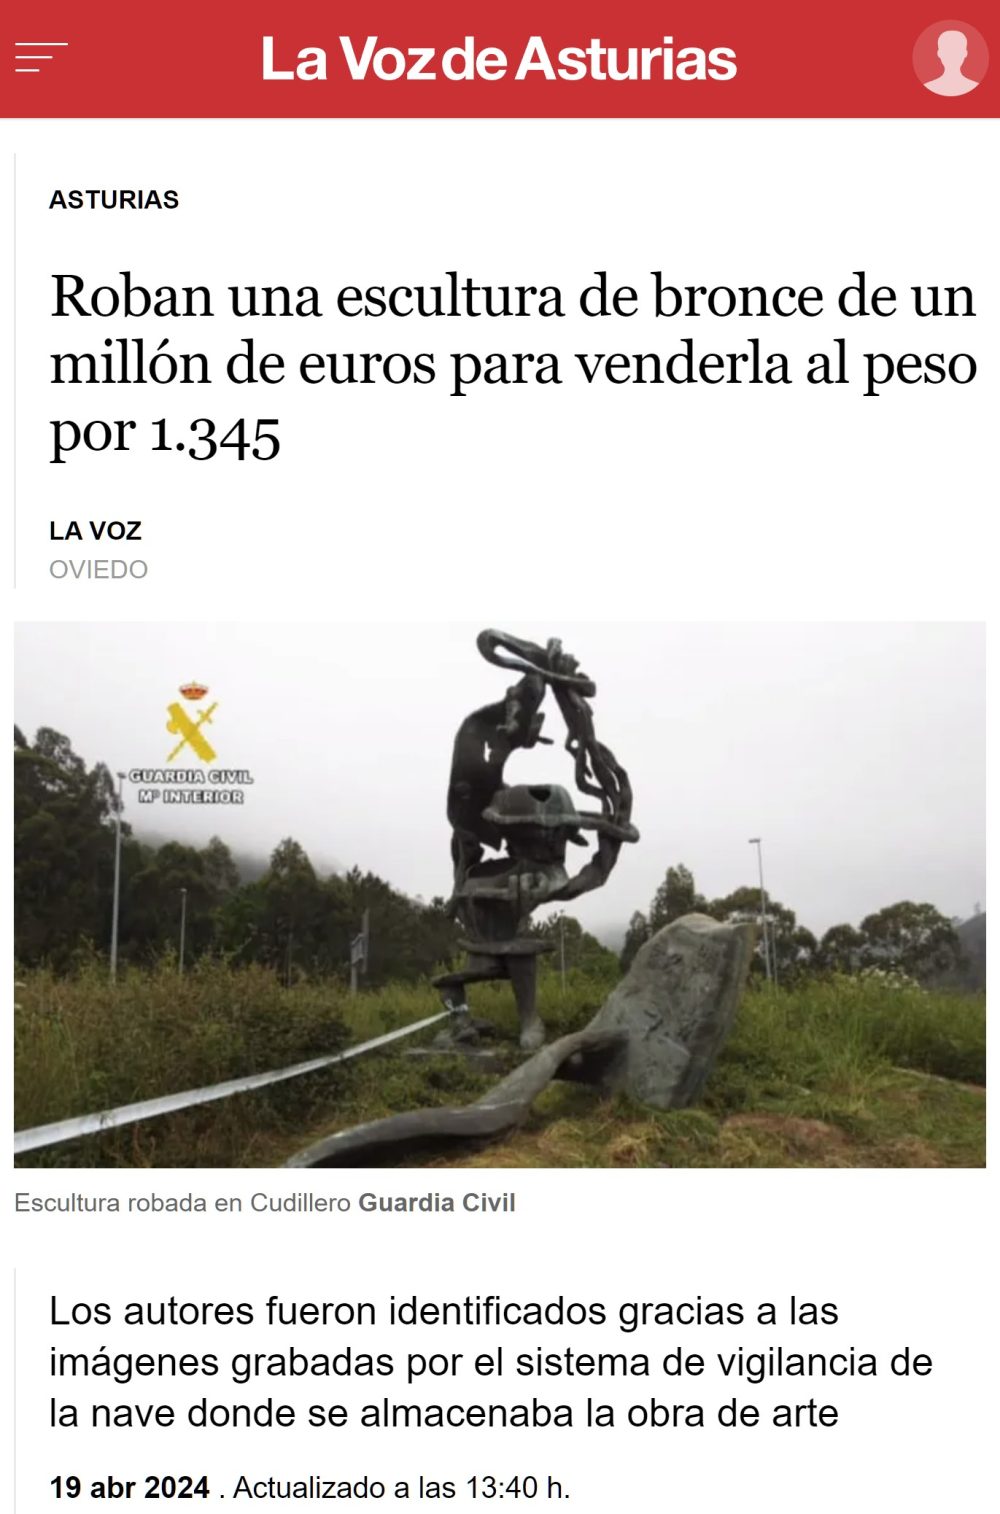 Roban una escultura de 1 millón de euros para venderla al peso por 1345.